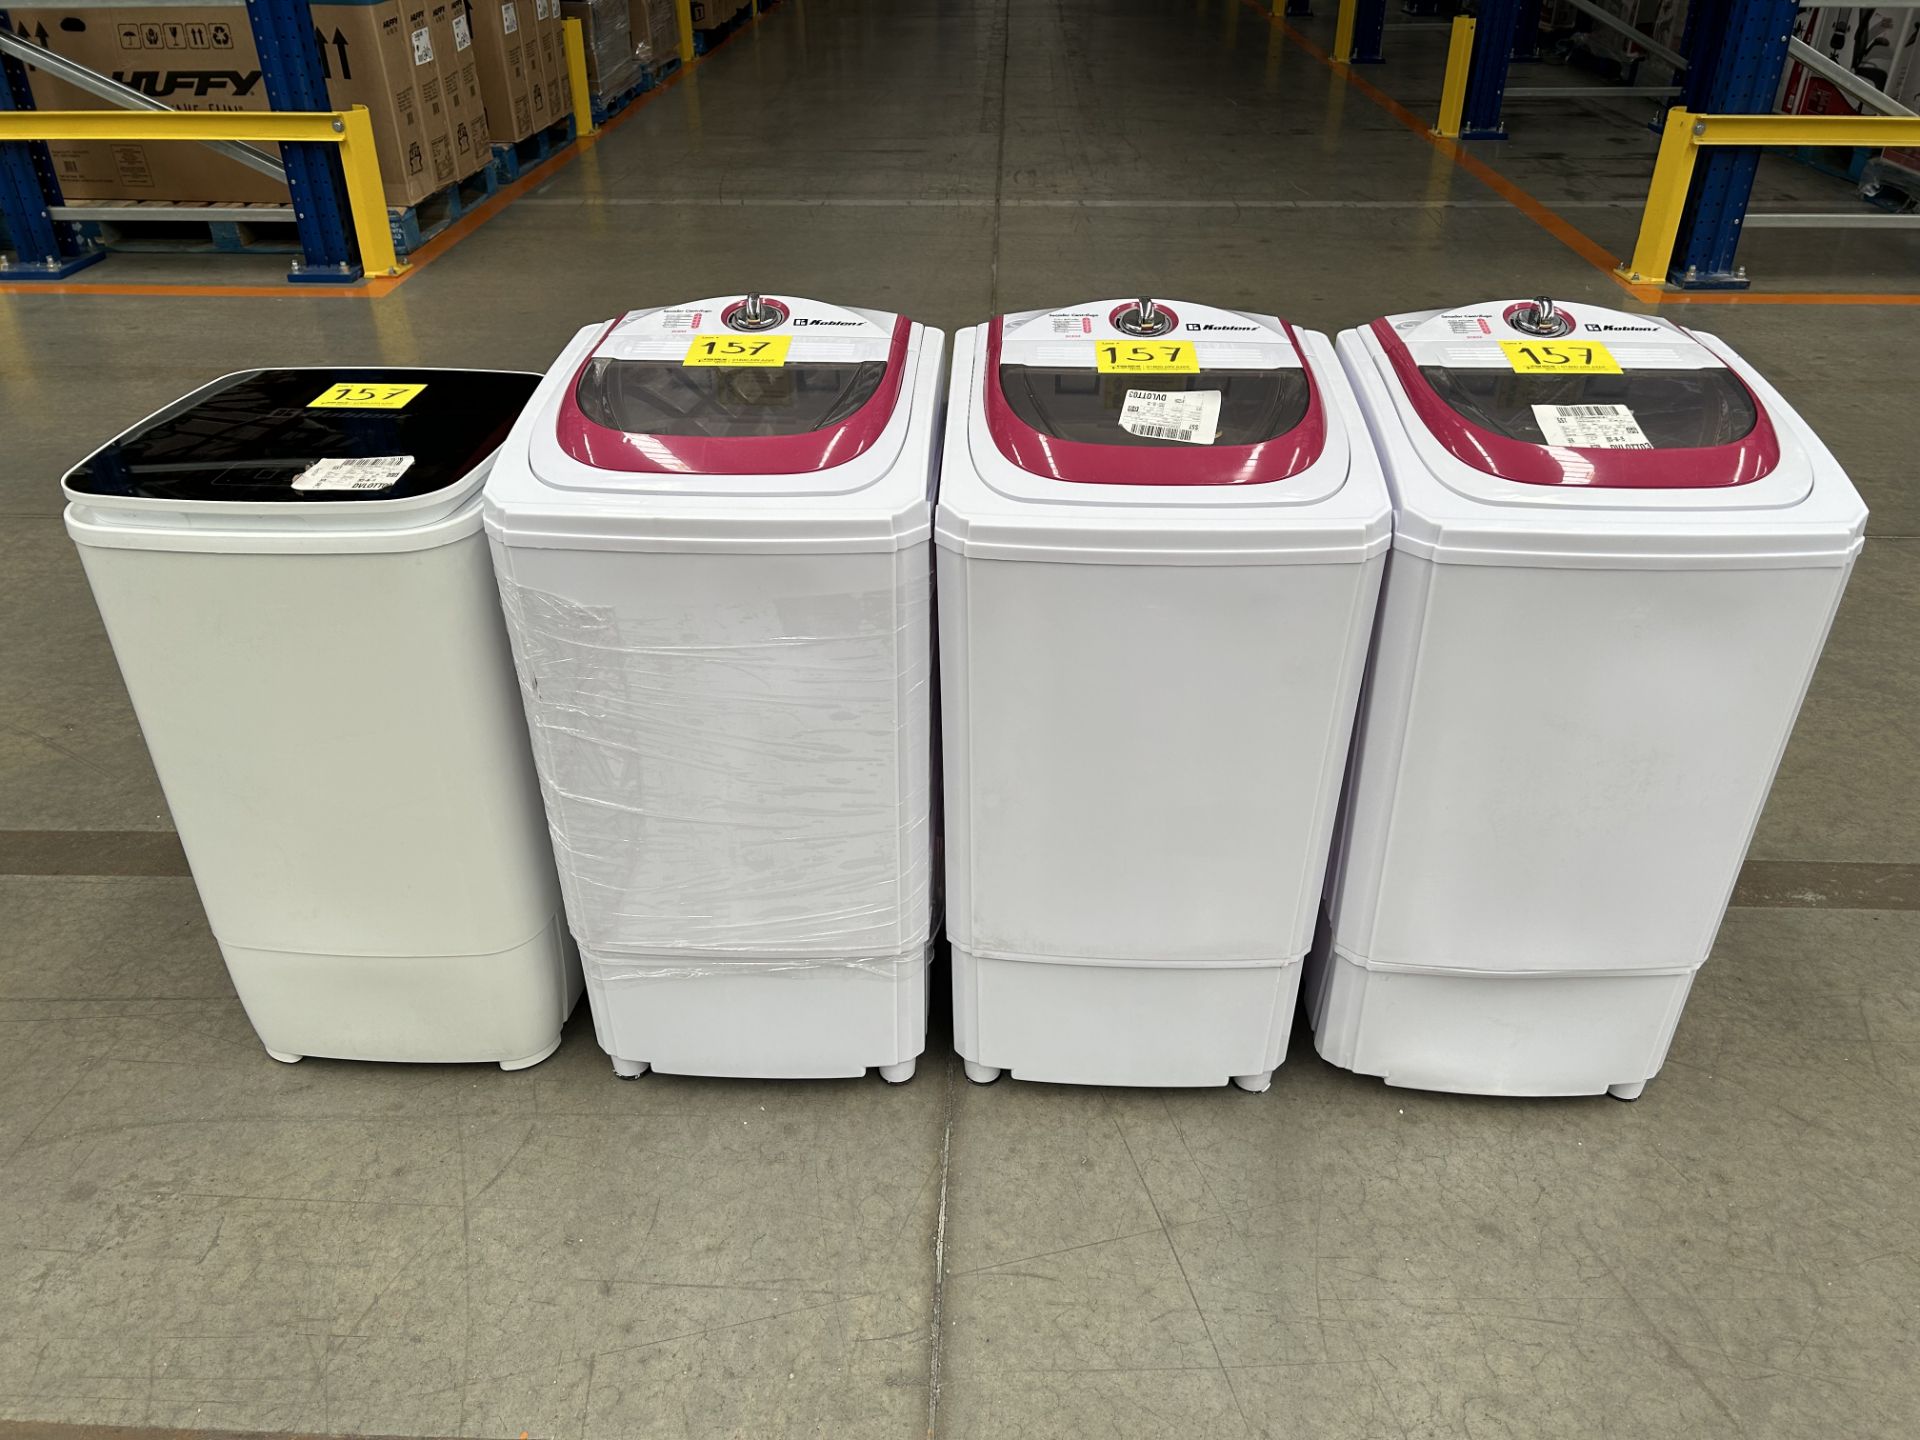 Lote de 4 lavadoras contiene: 1 secador centrifugado Marca KOBLENZ, Modelo SCK55; 1 secador centrif